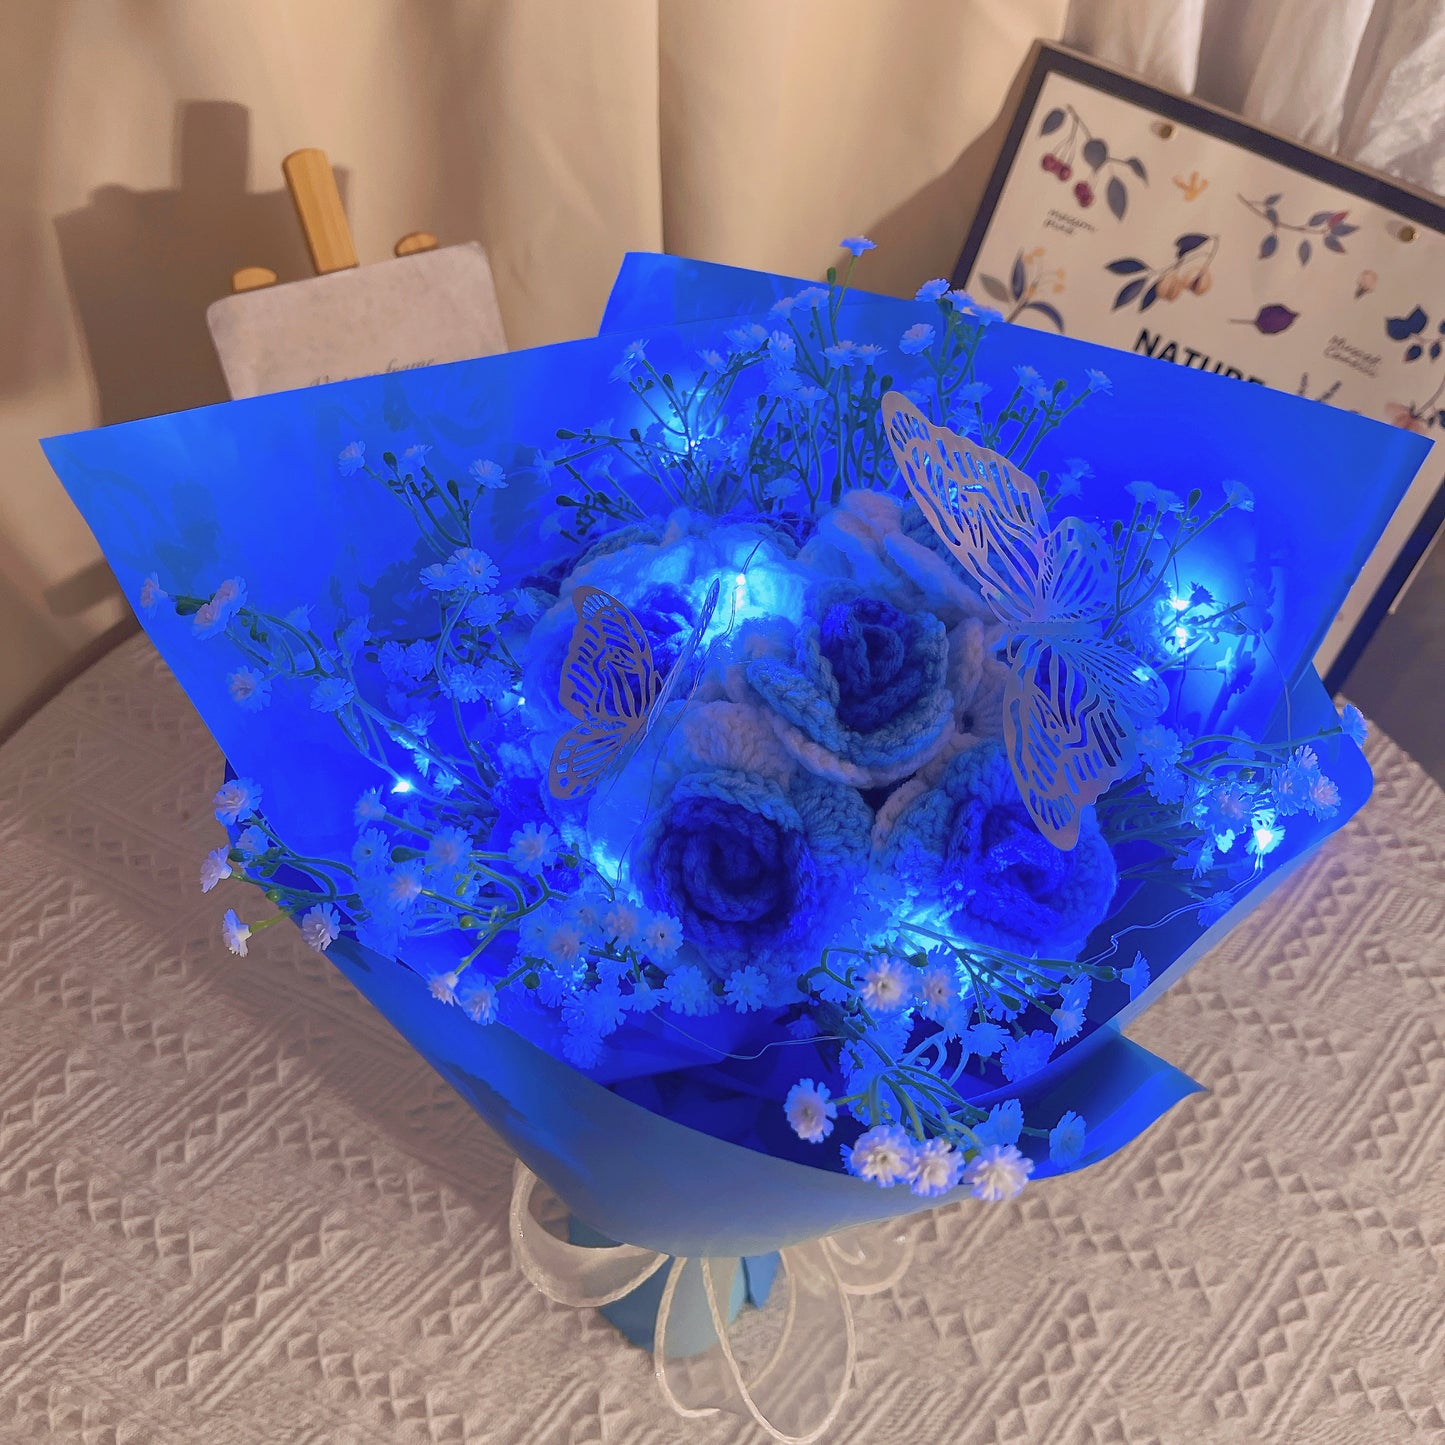 Gefrorener Rosenstrauß mit Farbverlauf von Weiß nach Blau, weißem Schleierkraut und leuchtend bunten Schmetterlingsakzenten, wunderschön verpackt in hell- und dunkelblauem Papier, ideal für Feiern im Prinzessinnenstil.